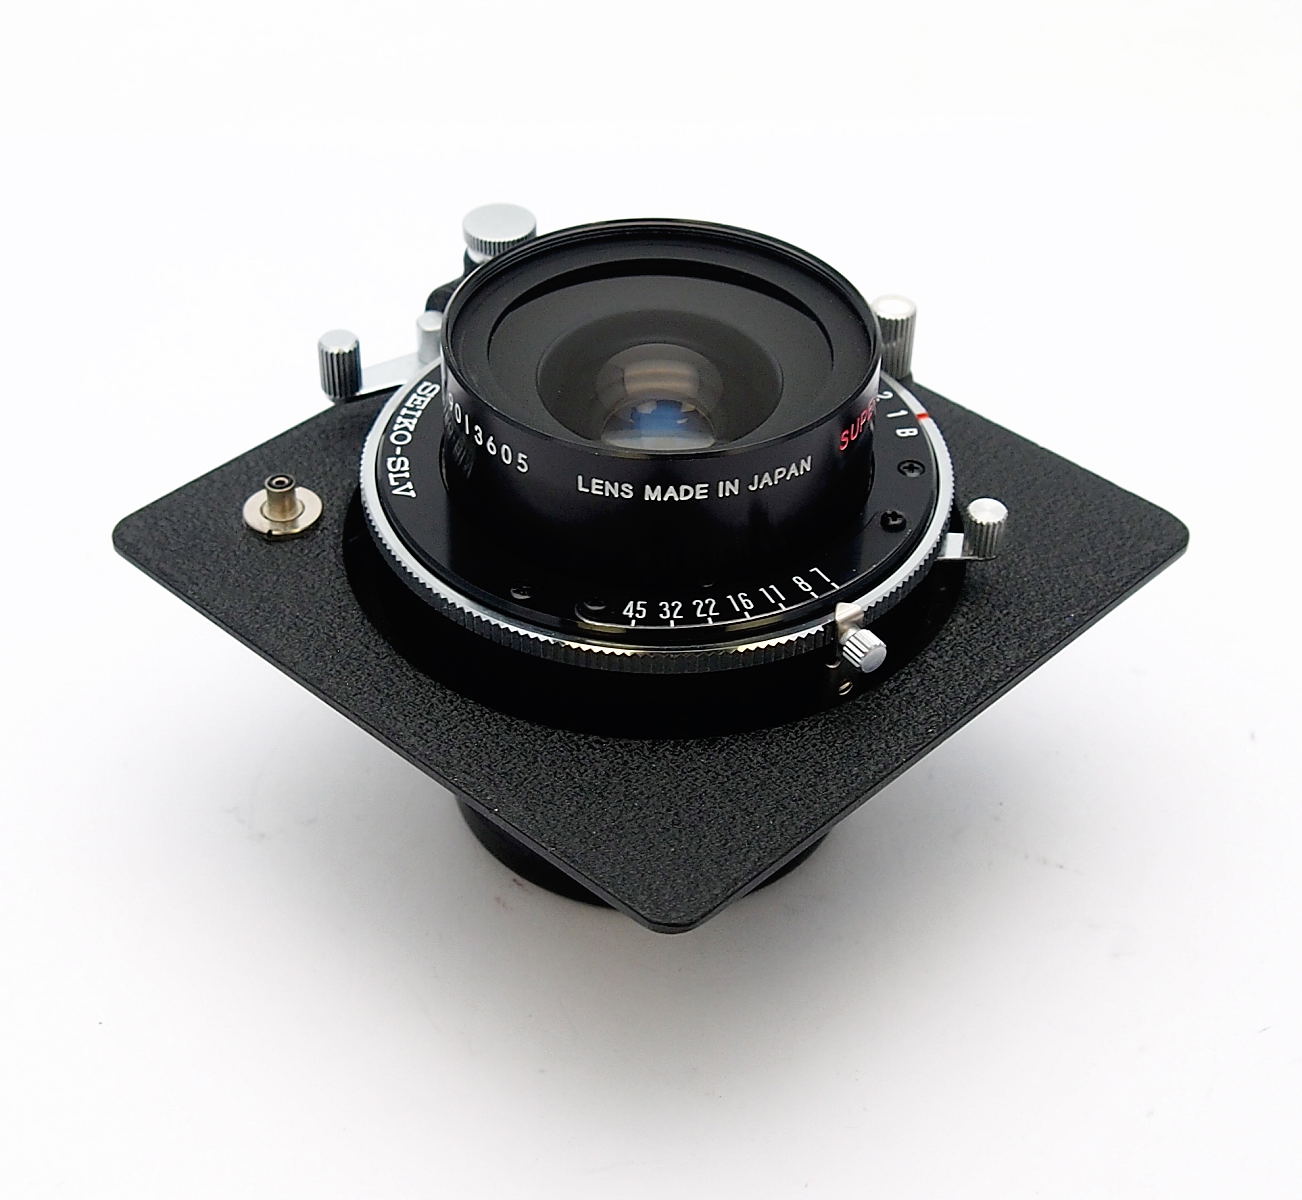 Super Horseman 65mm F7 Lens in Seiko SLV Shutter + Hood #9484